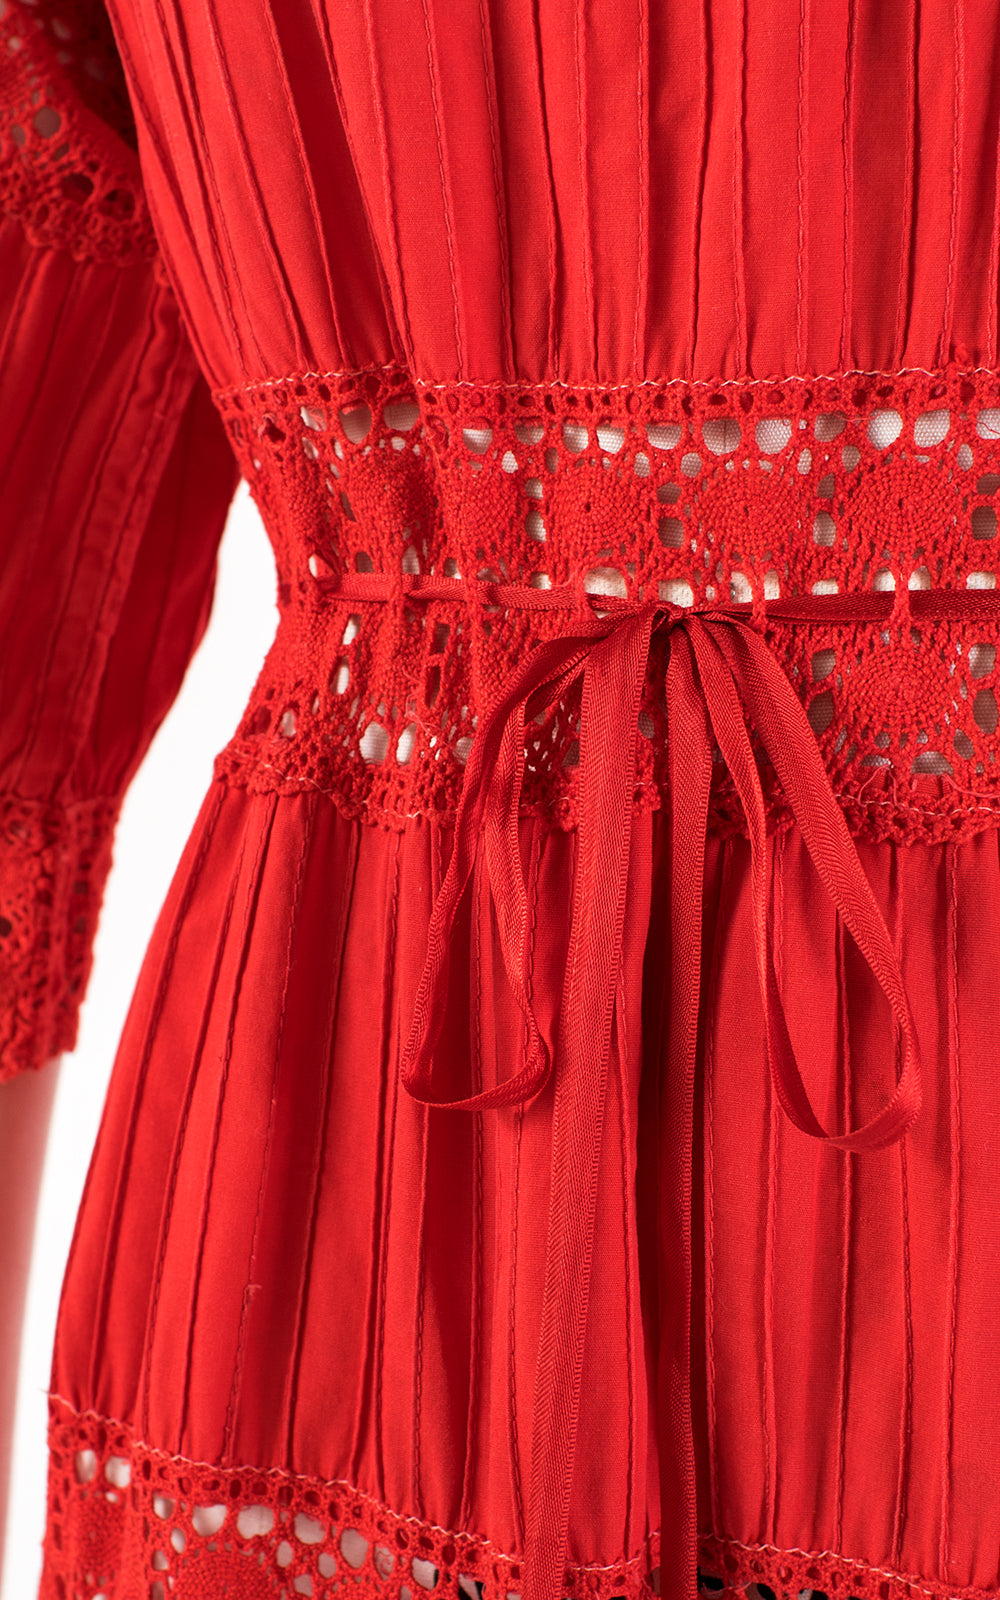 1970s Mexican Pintuck Cotton Crochet Red Maxi Dress | medium